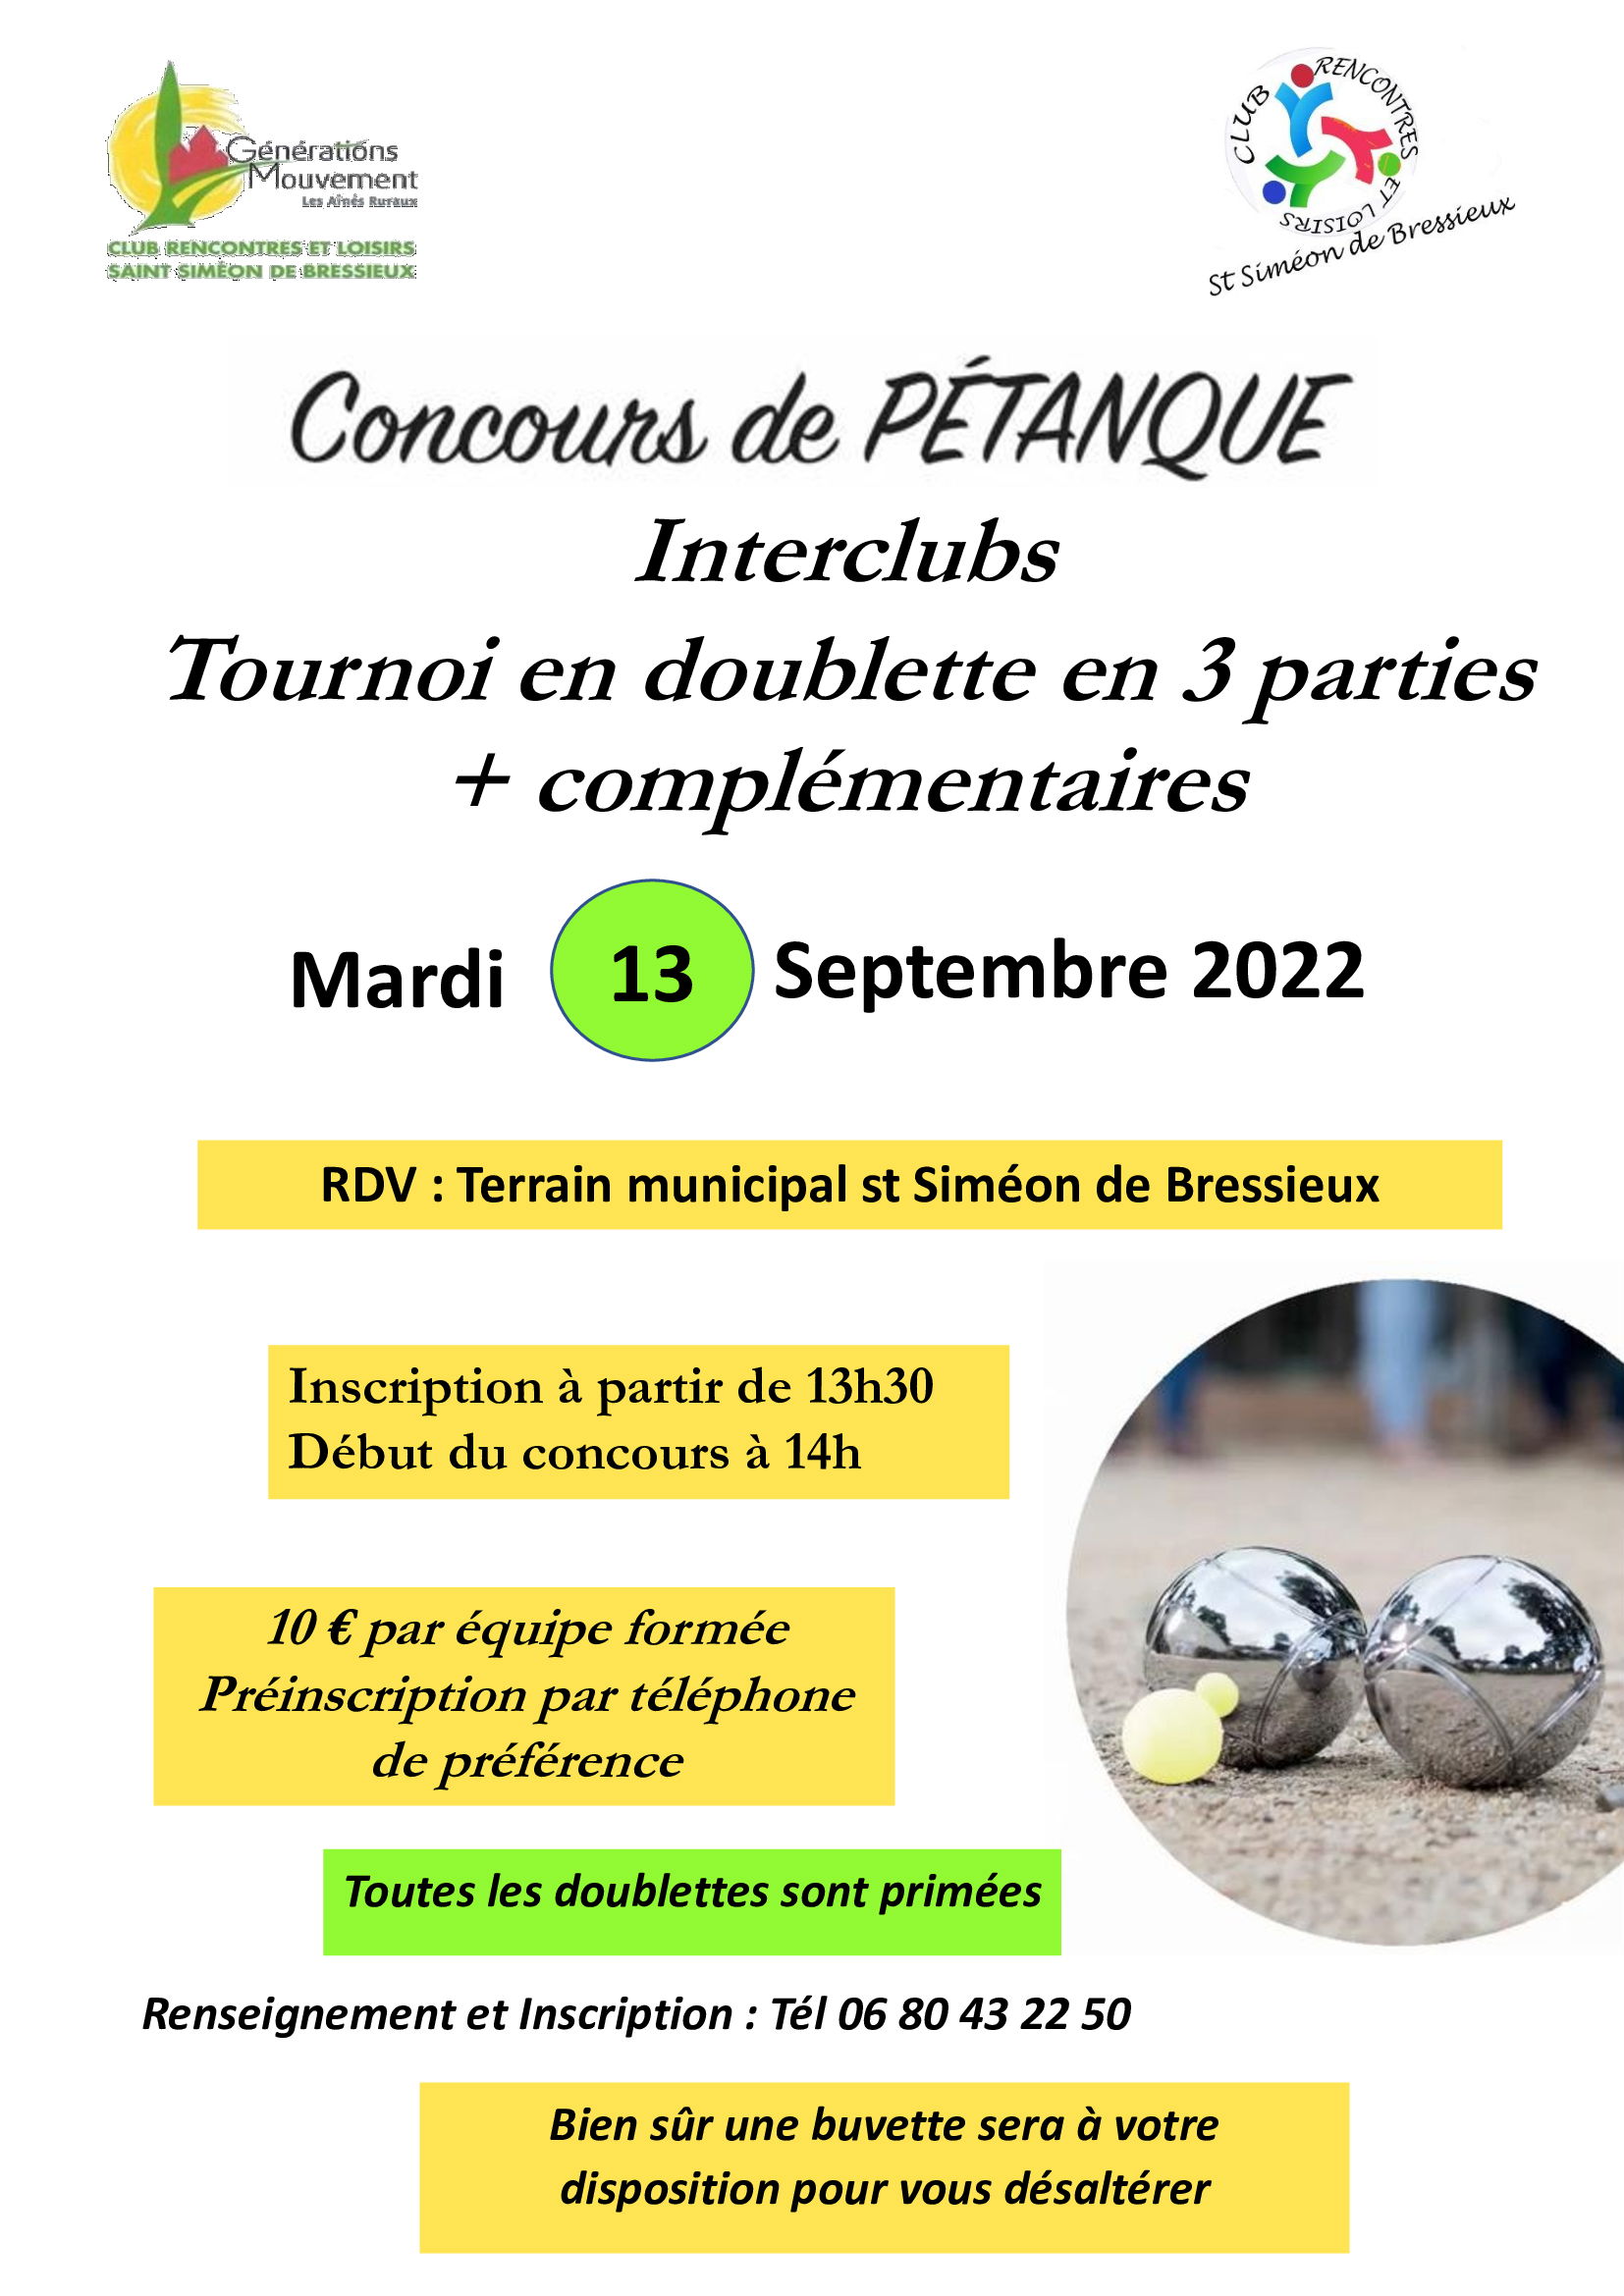 CONCOURS DE PETANQUE INTERCLUBS 13-09-2022